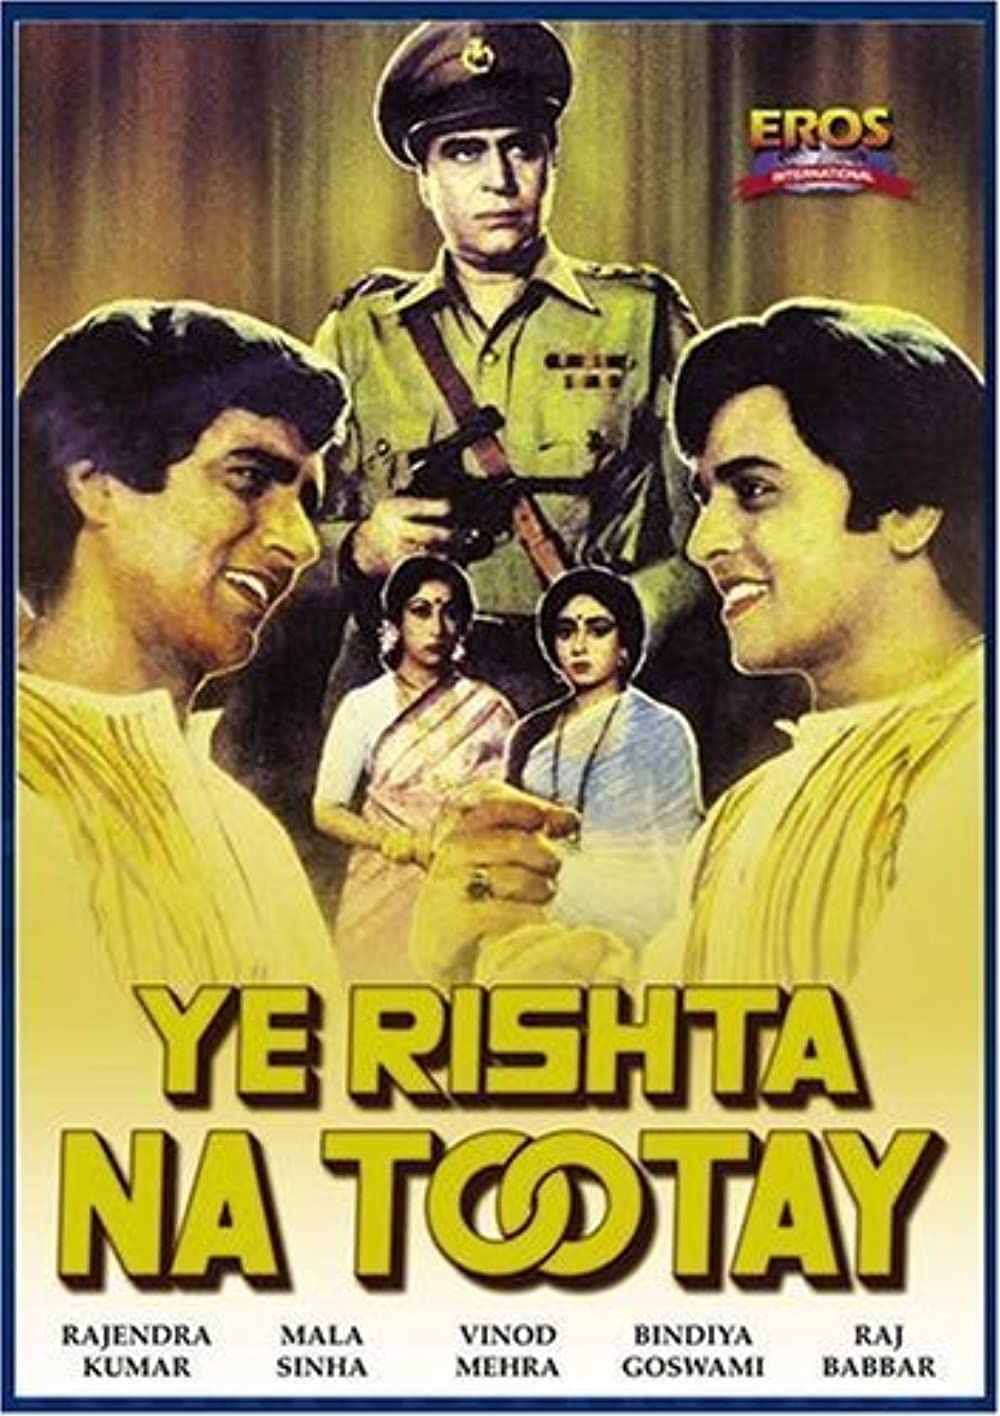 Yeh Rishta Na Tootay Poster